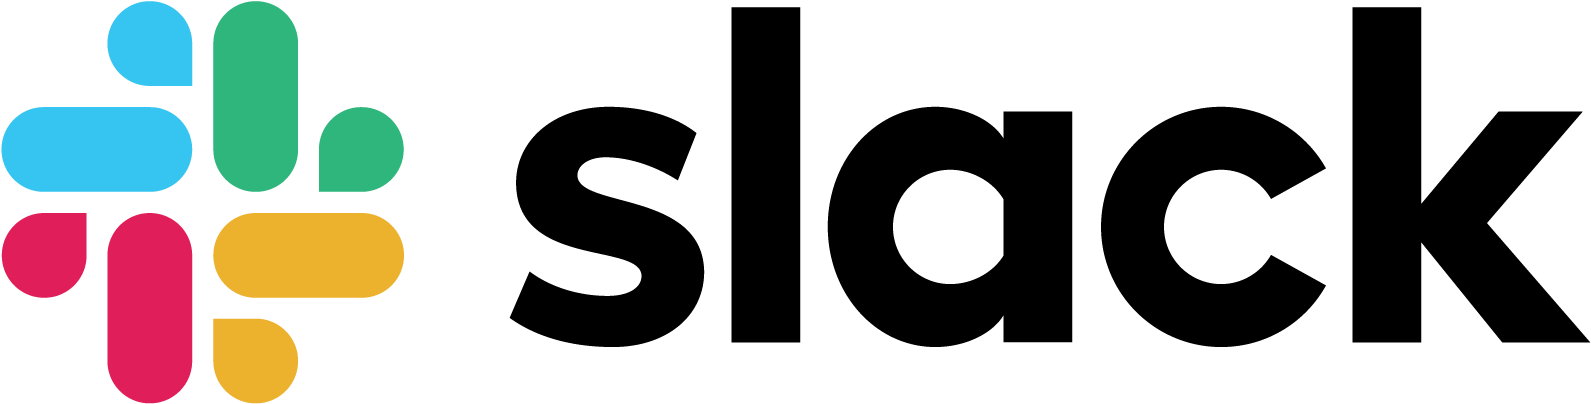 New Png Svg Vector Transparent Background - Slack Logo (1600x416), Png Download